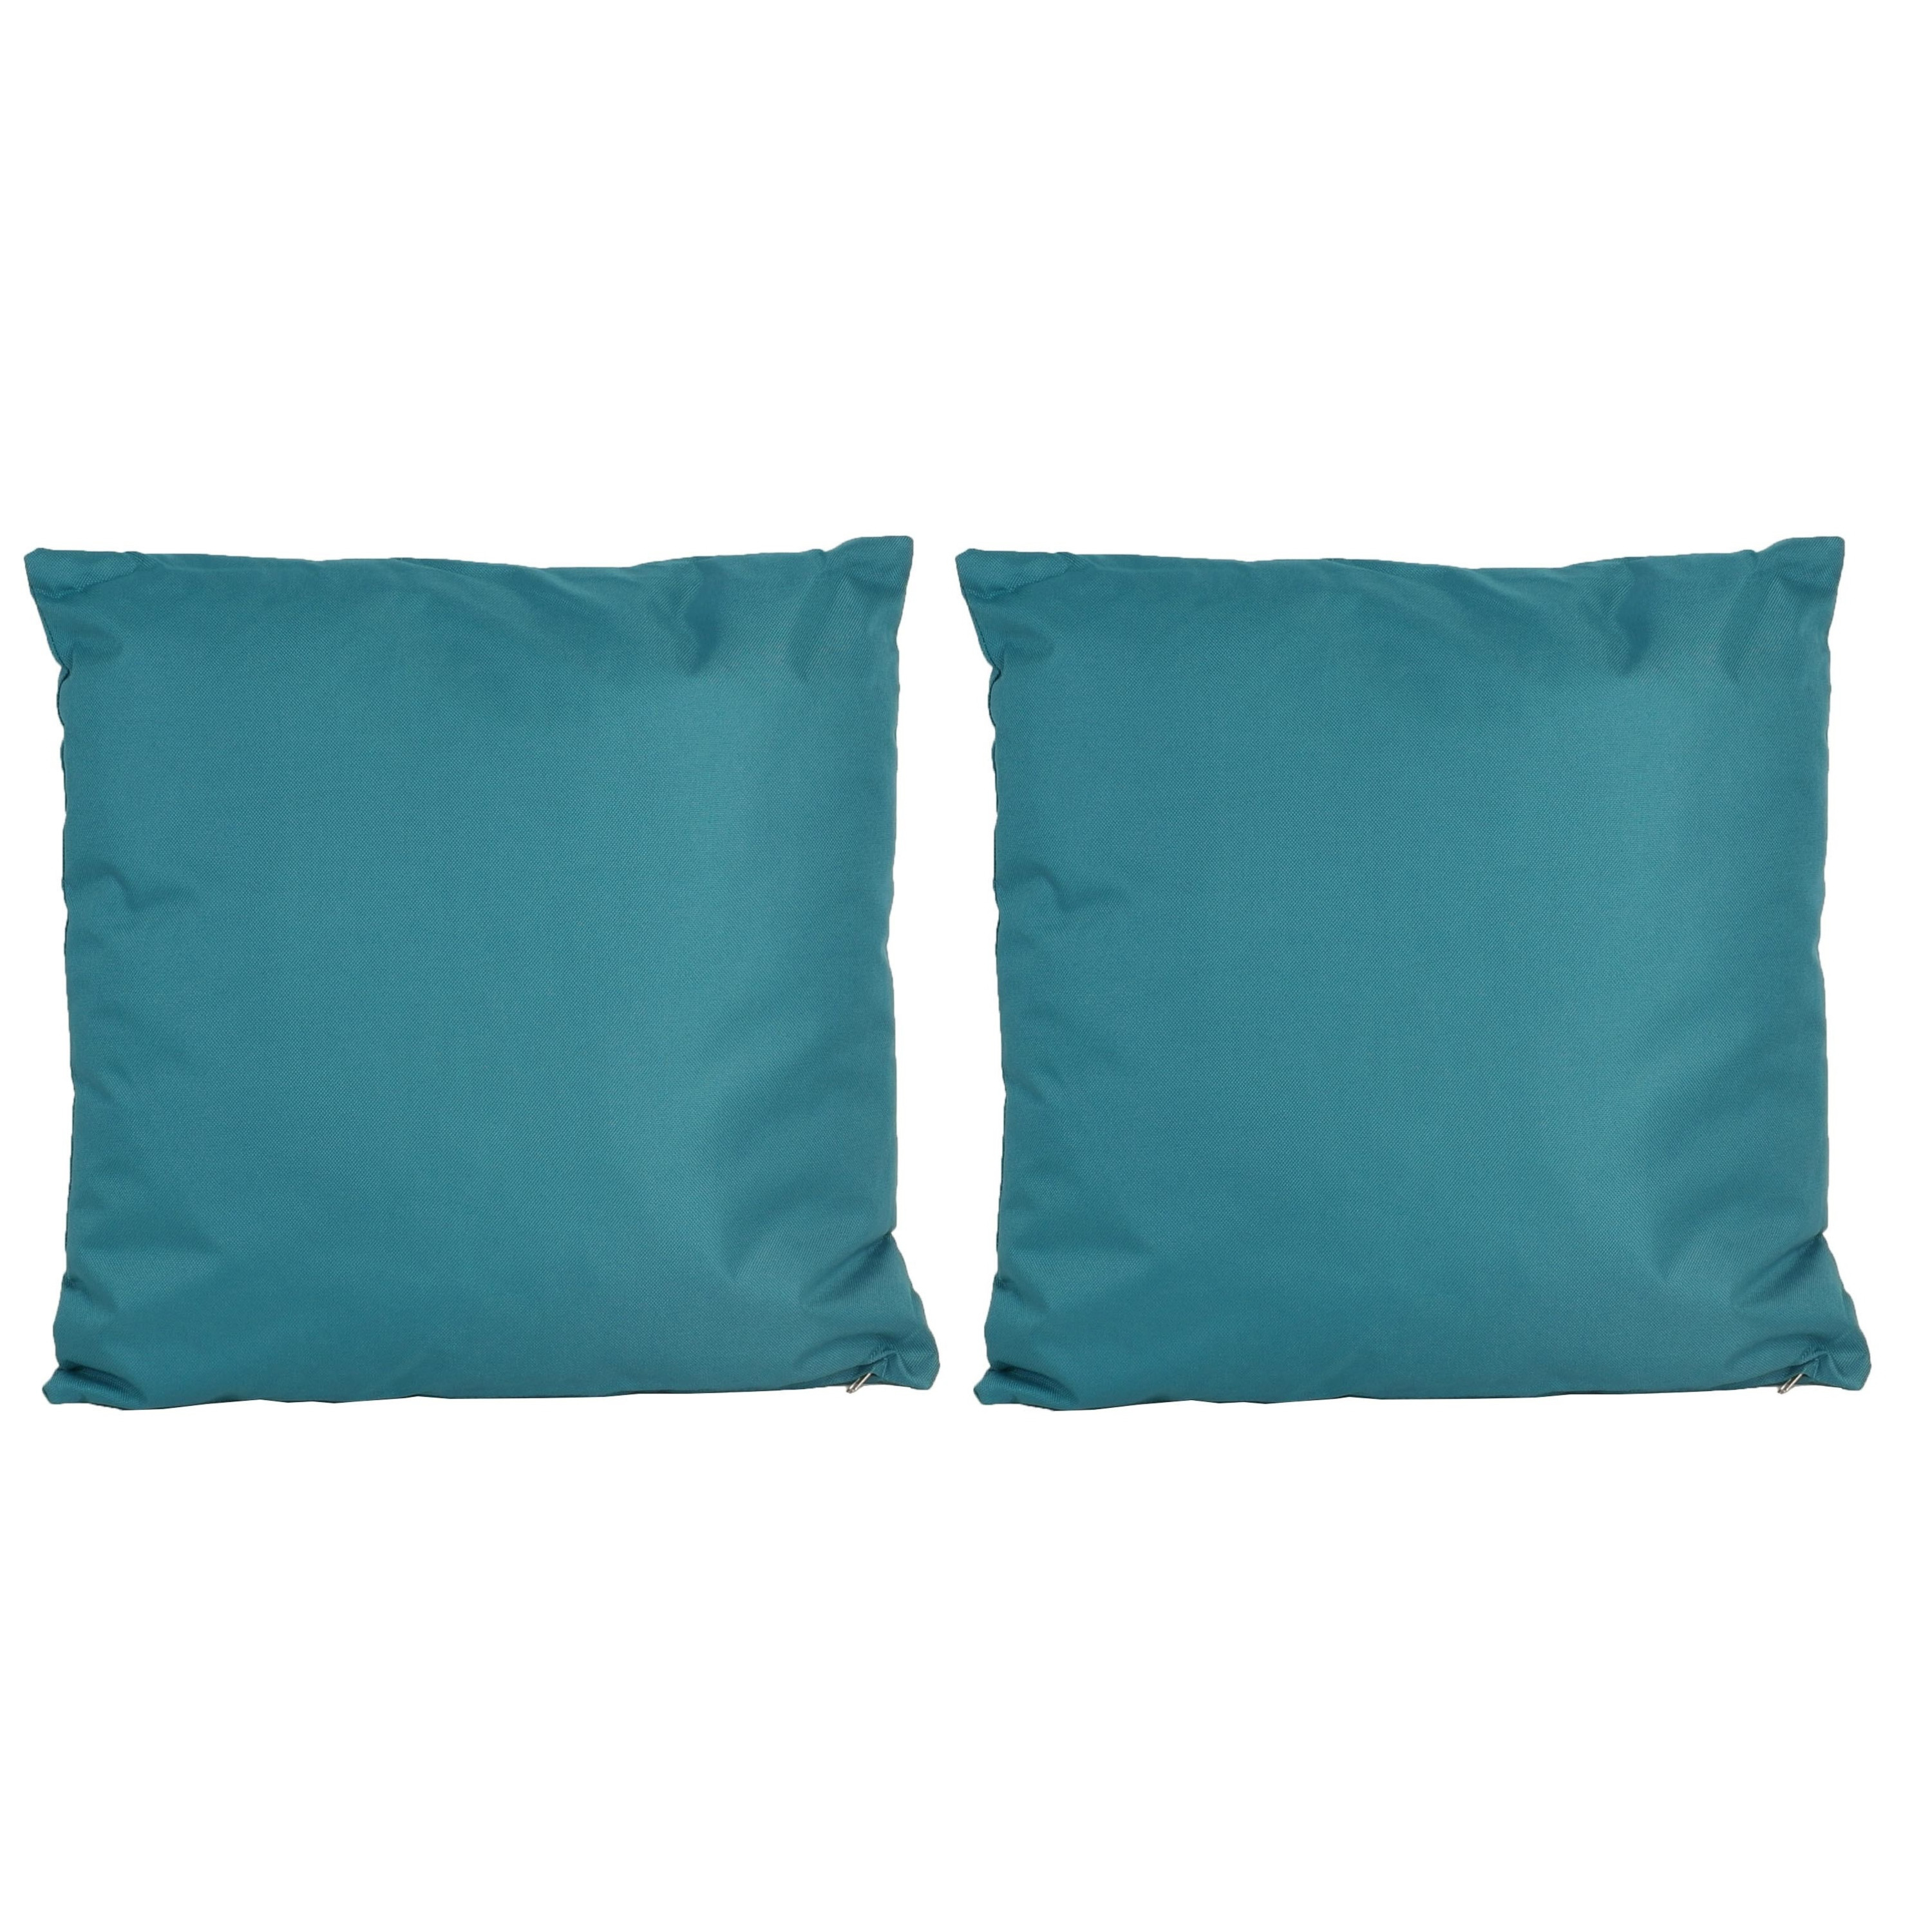 2x Bank-sier kussens voor binnen en buiten in de kleur petrol blauw 45 x 45 cm